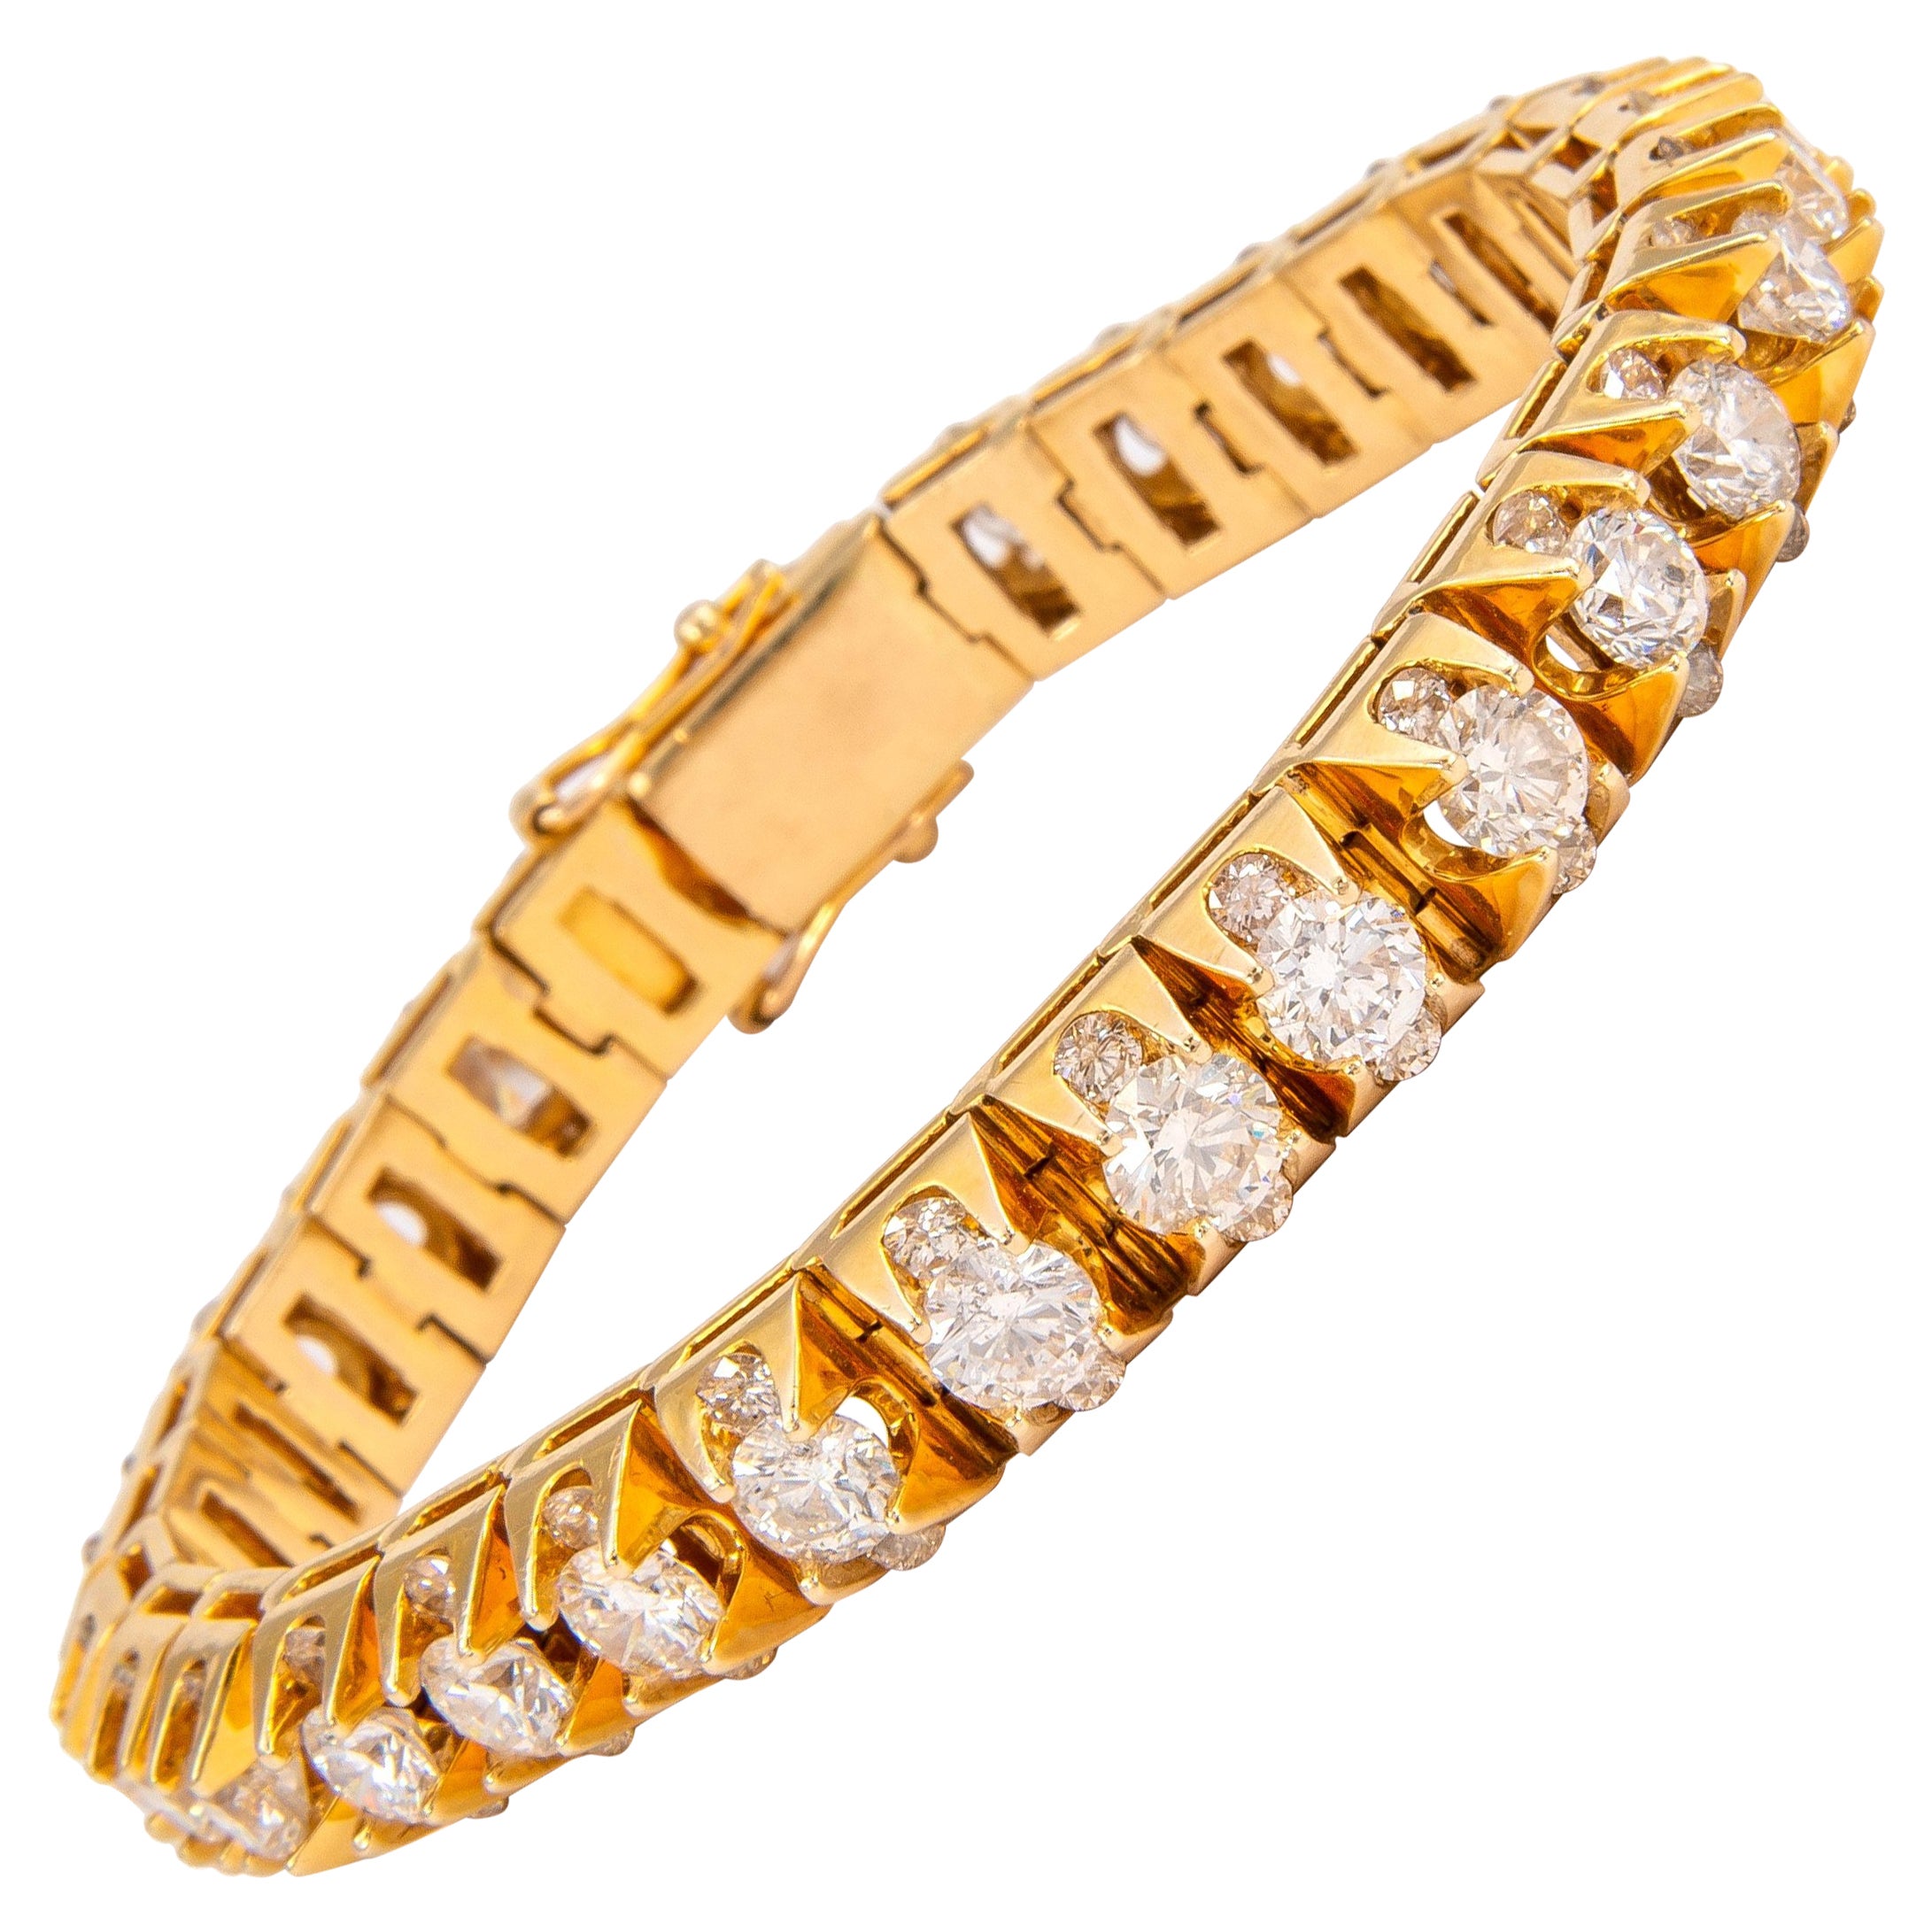 Estate / Vintage Apx 20.05 Carats Diamond Bracelet Yellow Gold For Sale